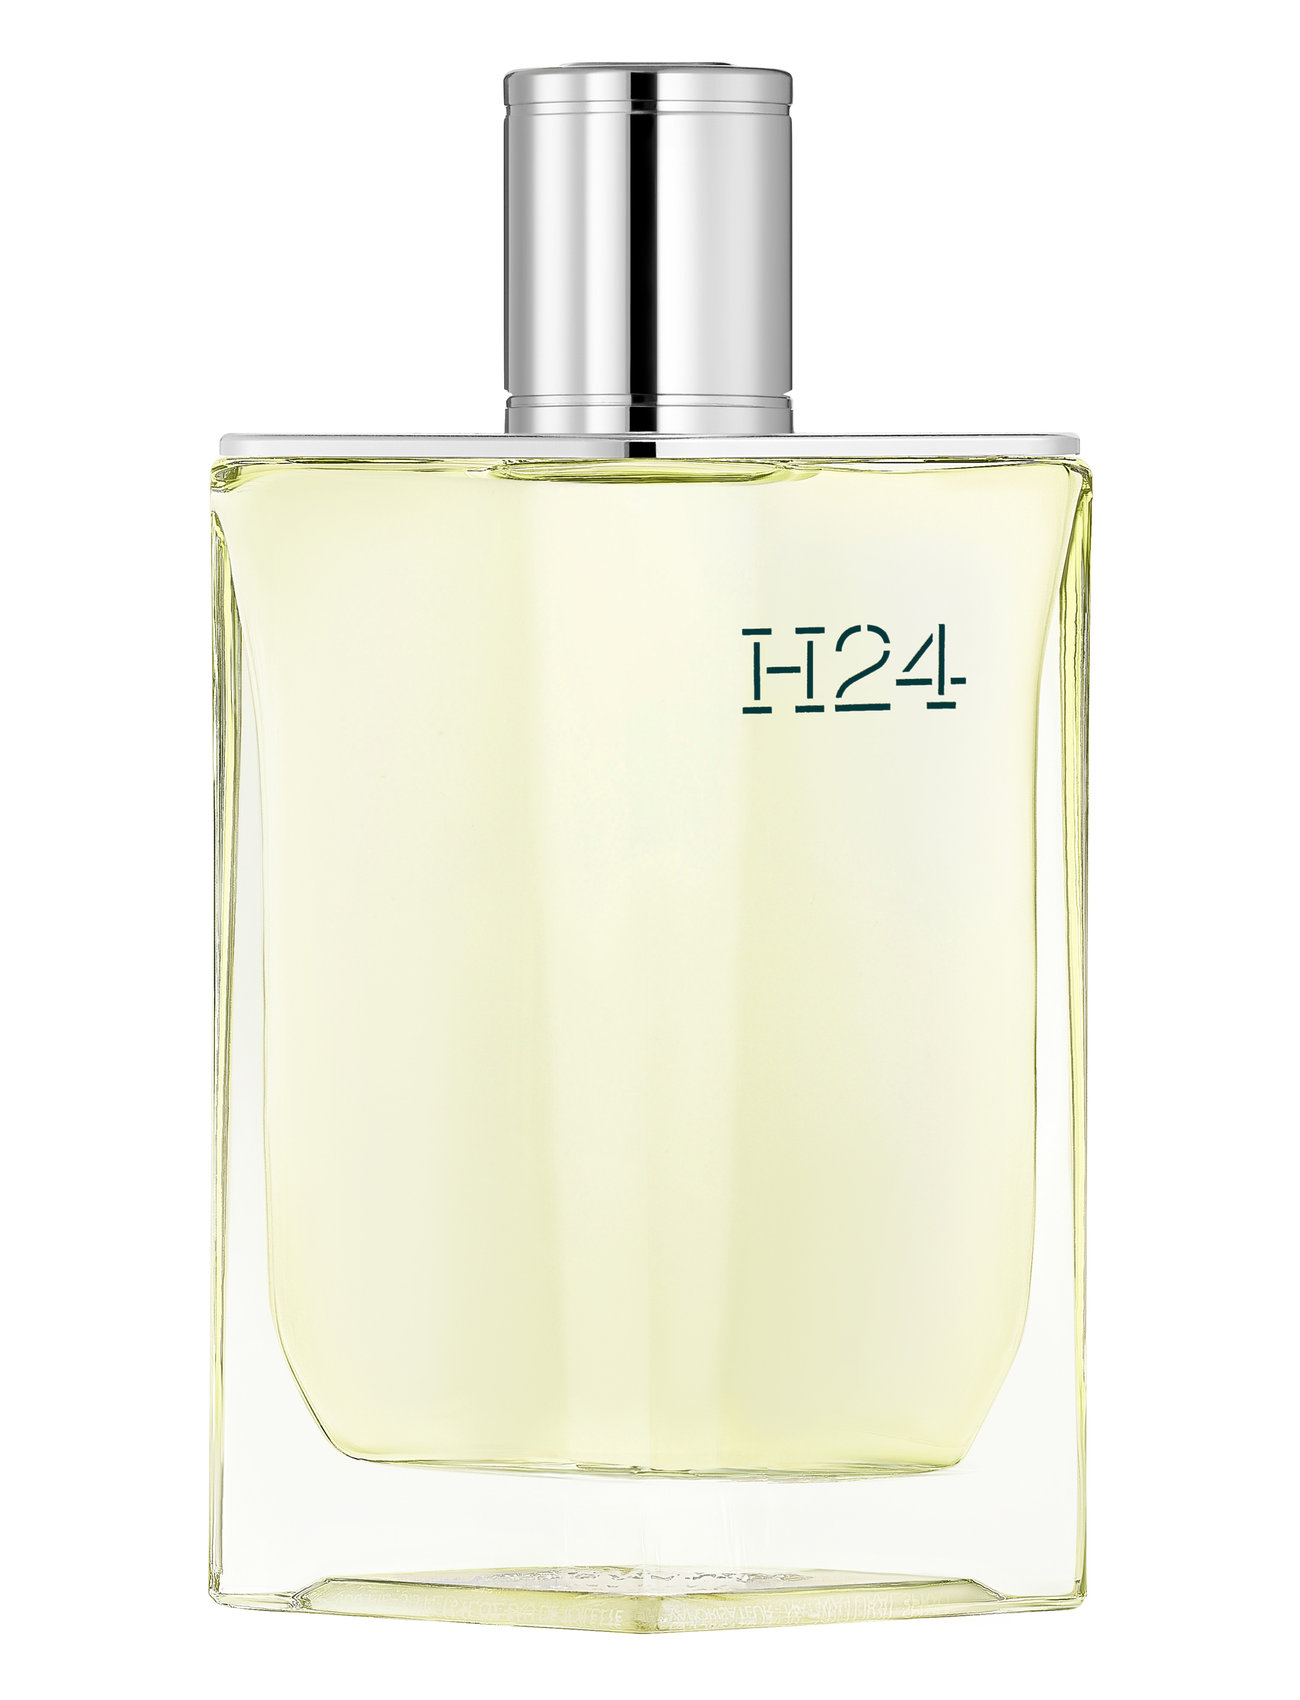 HERMÈS "H24, Eau De Toilette Parfume Parfum Nude HERMÈS"